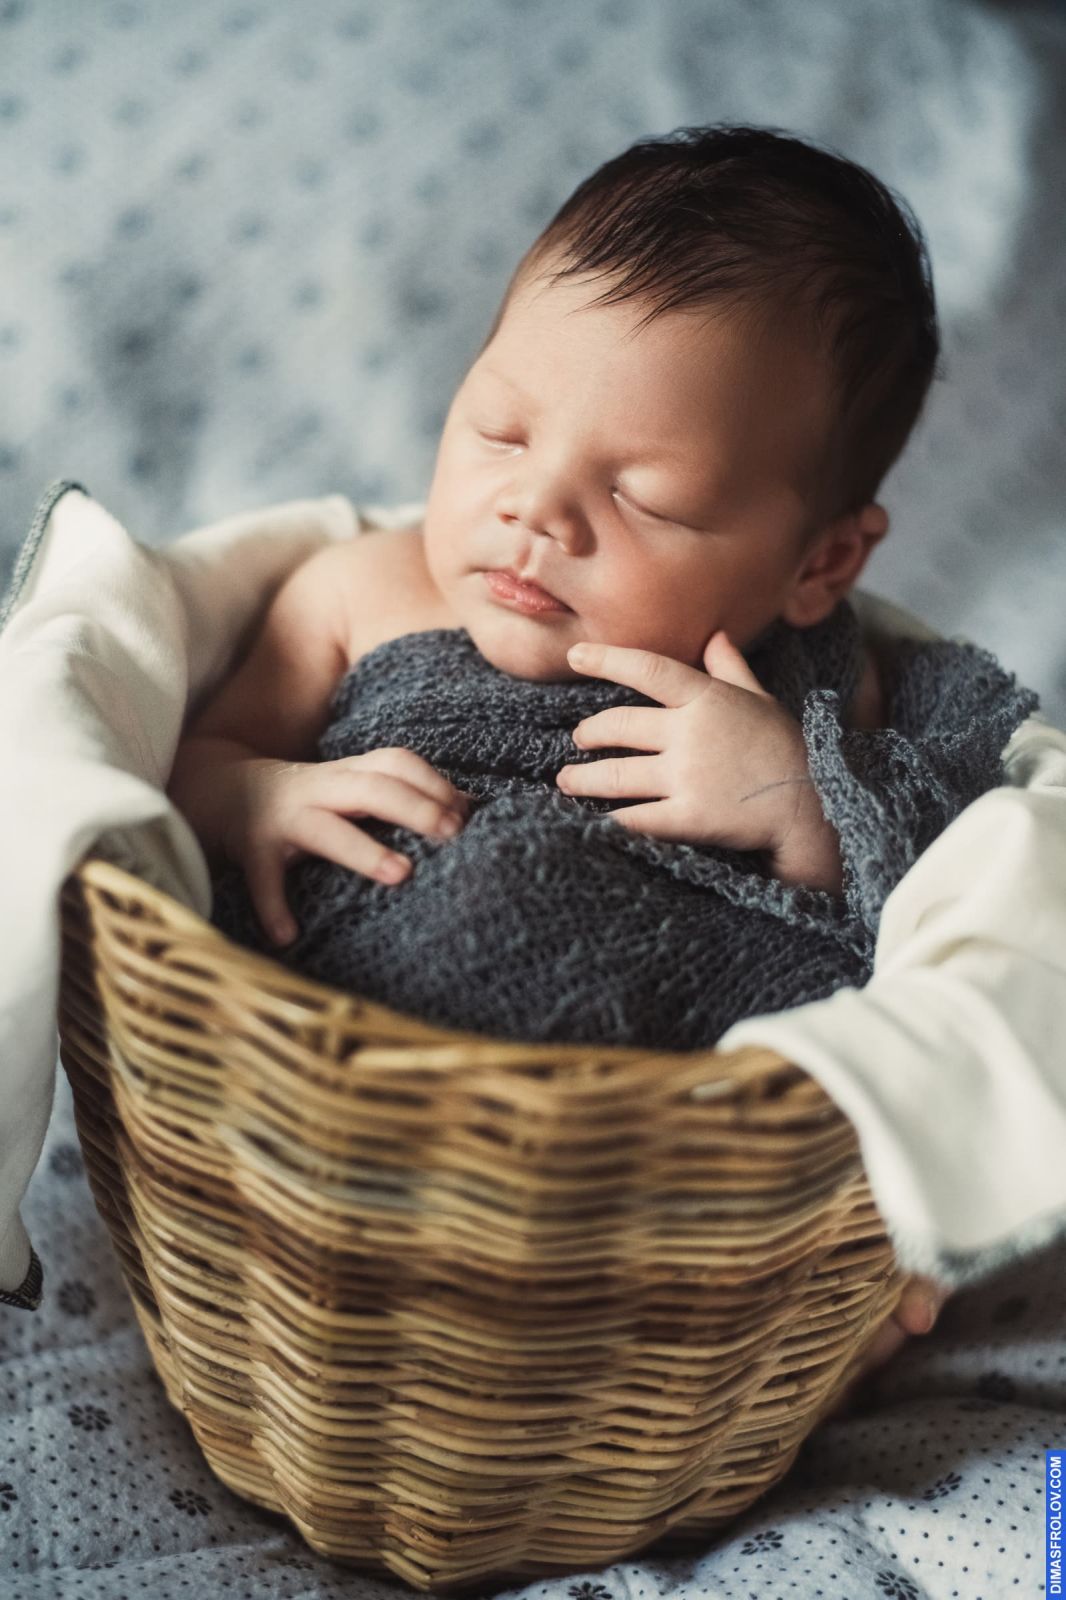 คลอดบุตร, การถ่ายภาพทารกแรกเกิด. photo1 baby-tao-024-2fca961e79. Dimas Frolov. Koh Samui Photographer. DimasFrolov.com